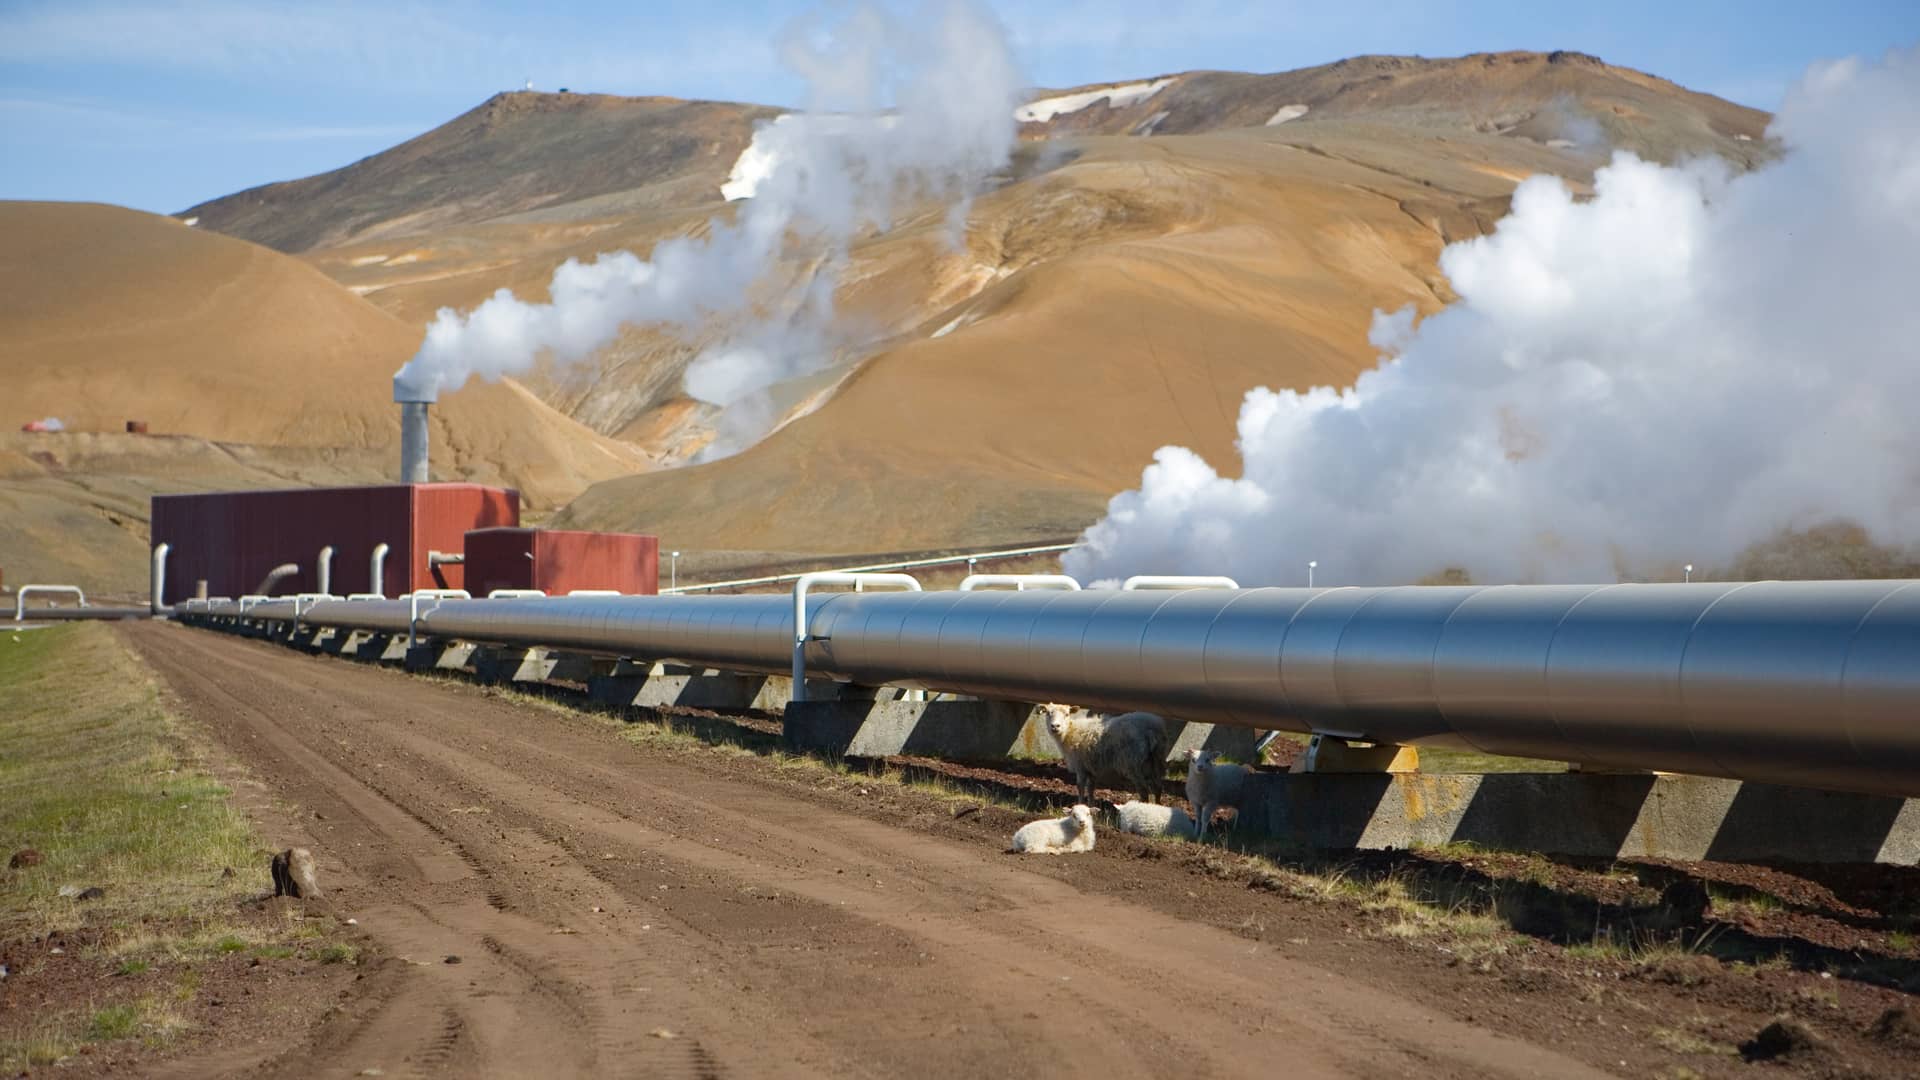 Ovejas junto a tubería que distribuye la energía proveniente de la central geotérmica, de la que también salen nubes de vapor